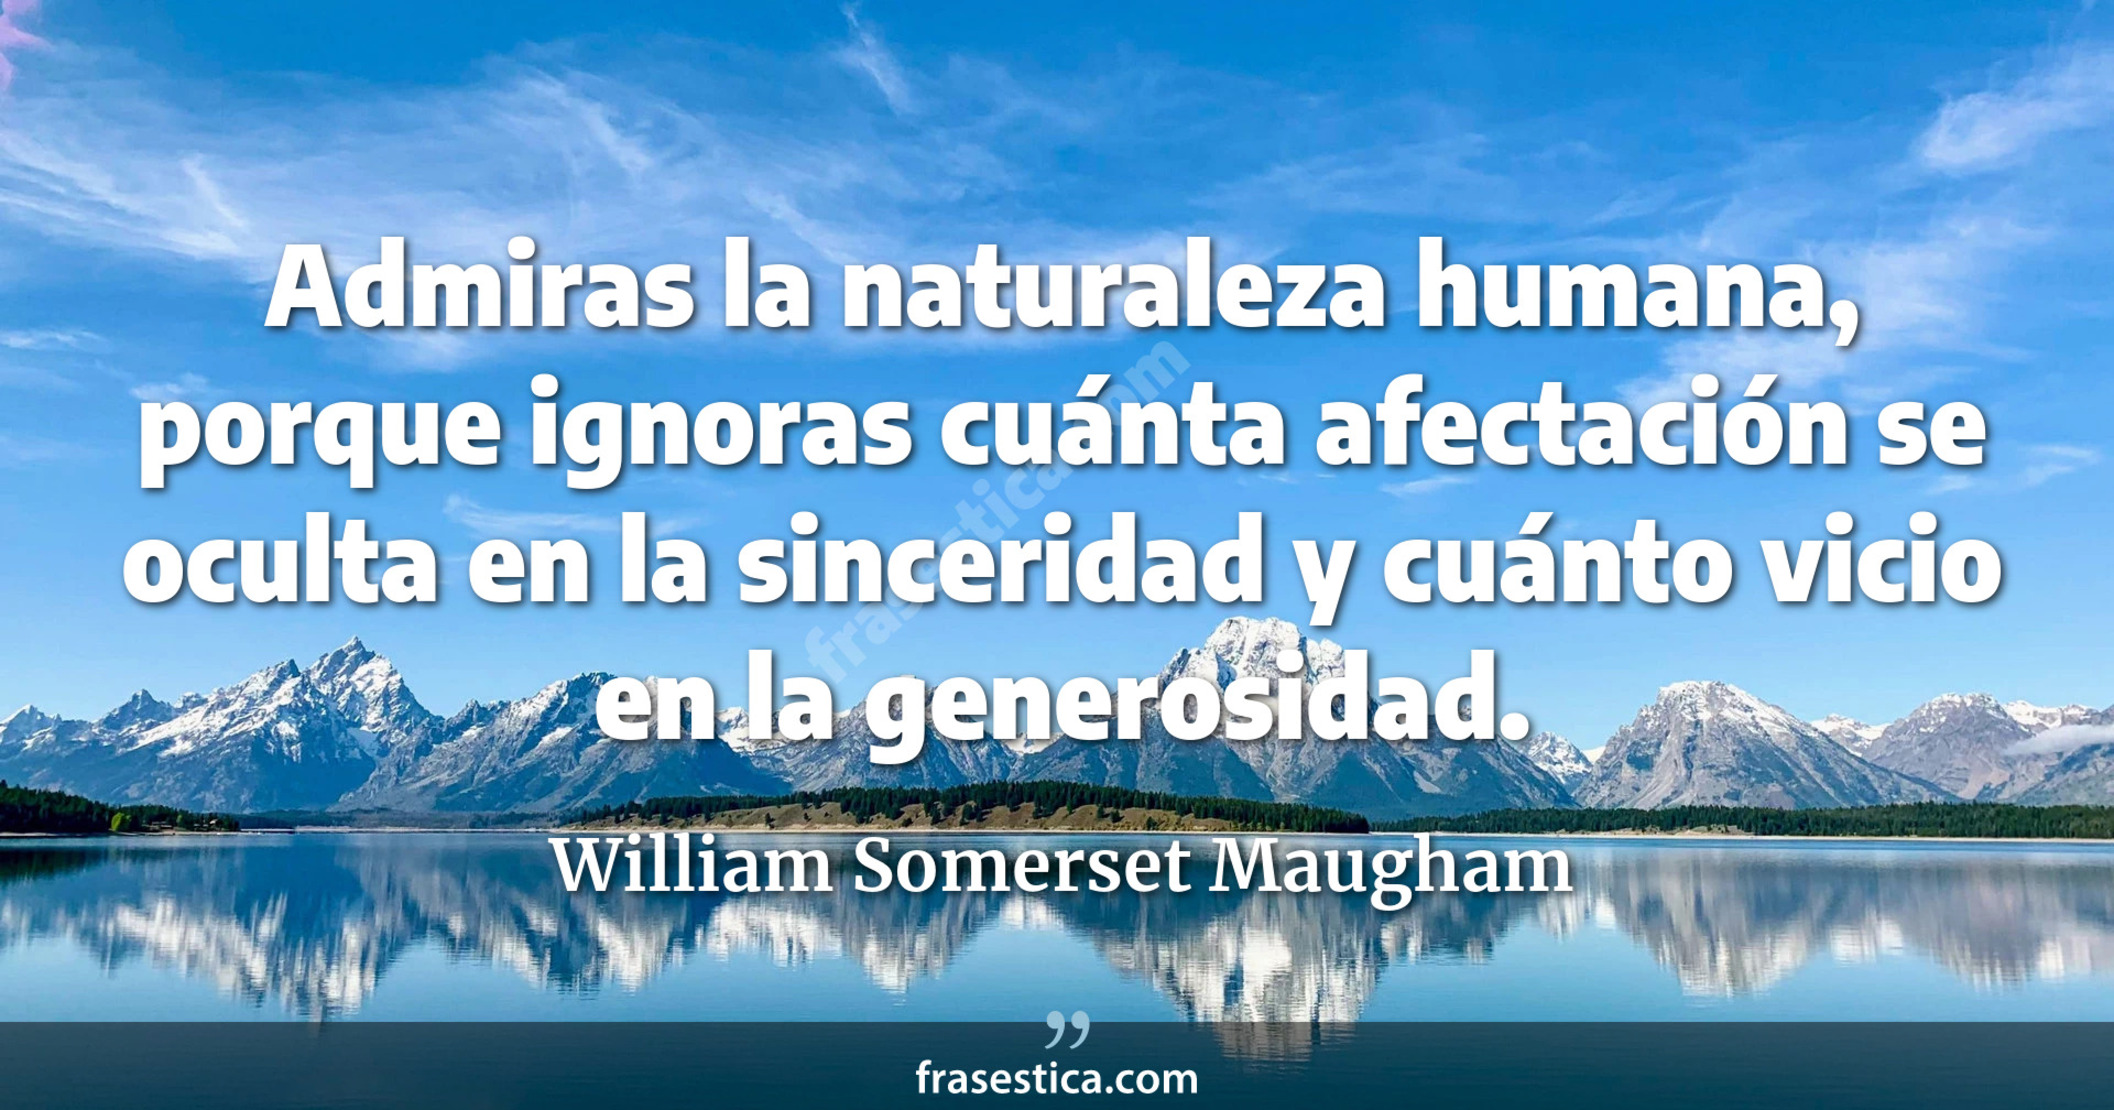 Admiras la naturaleza humana, porque ignoras cuánta afectación se oculta en la sinceridad y cuánto vicio en la generosidad. - William Somerset Maugham